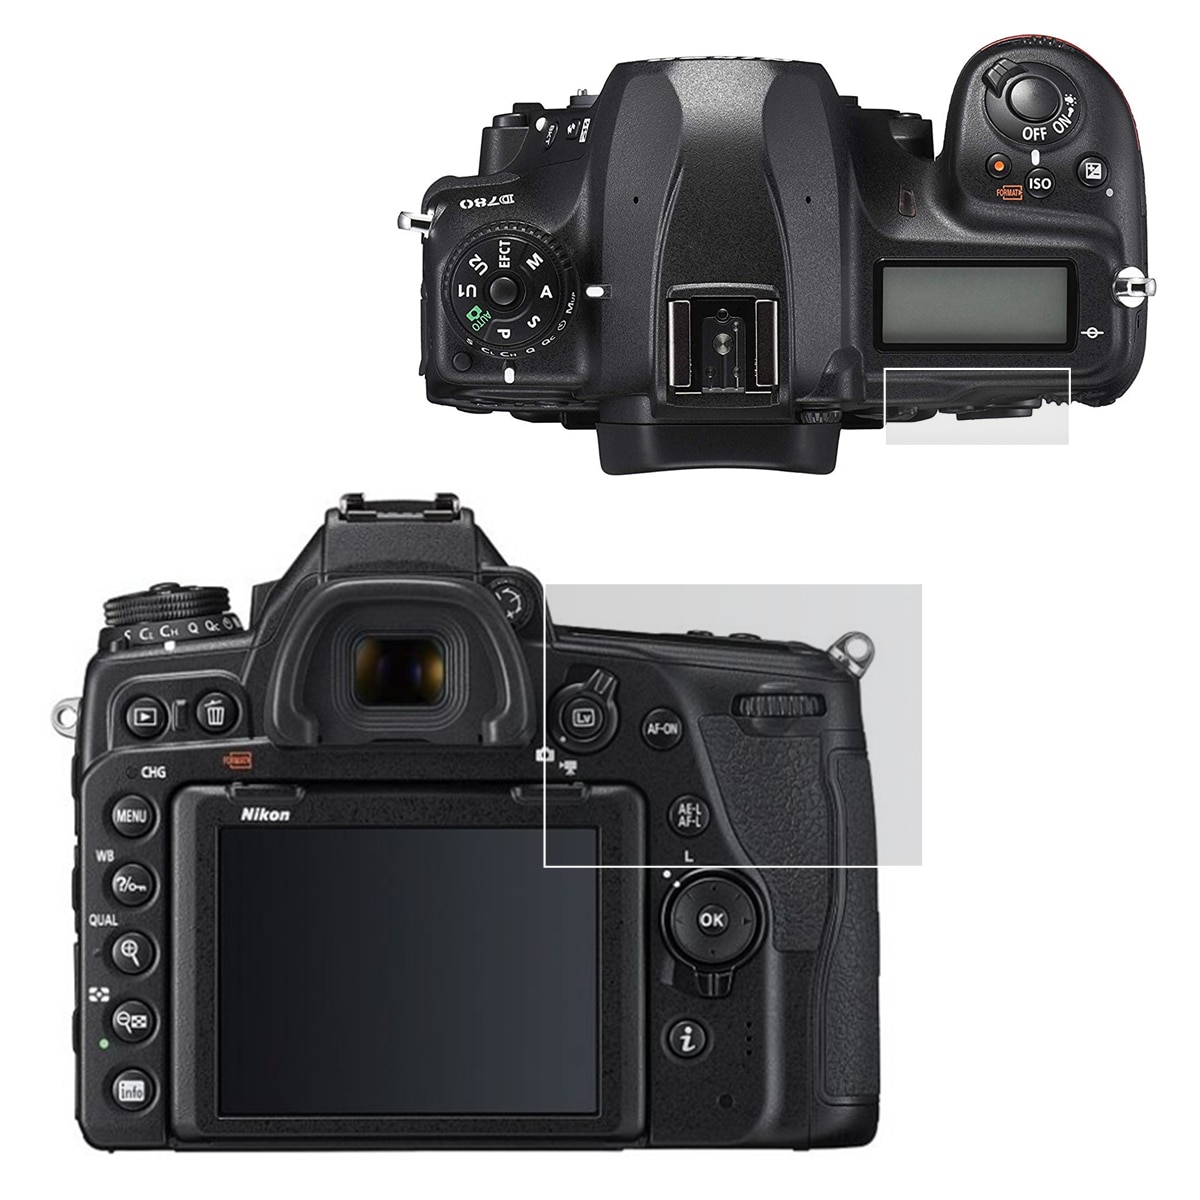 Zelfklevende Gehard Glas Belangrijkste Lcd + Top Info Schouder Screen Protector Cover Guard Voor Nikon D780 Dslr Camera